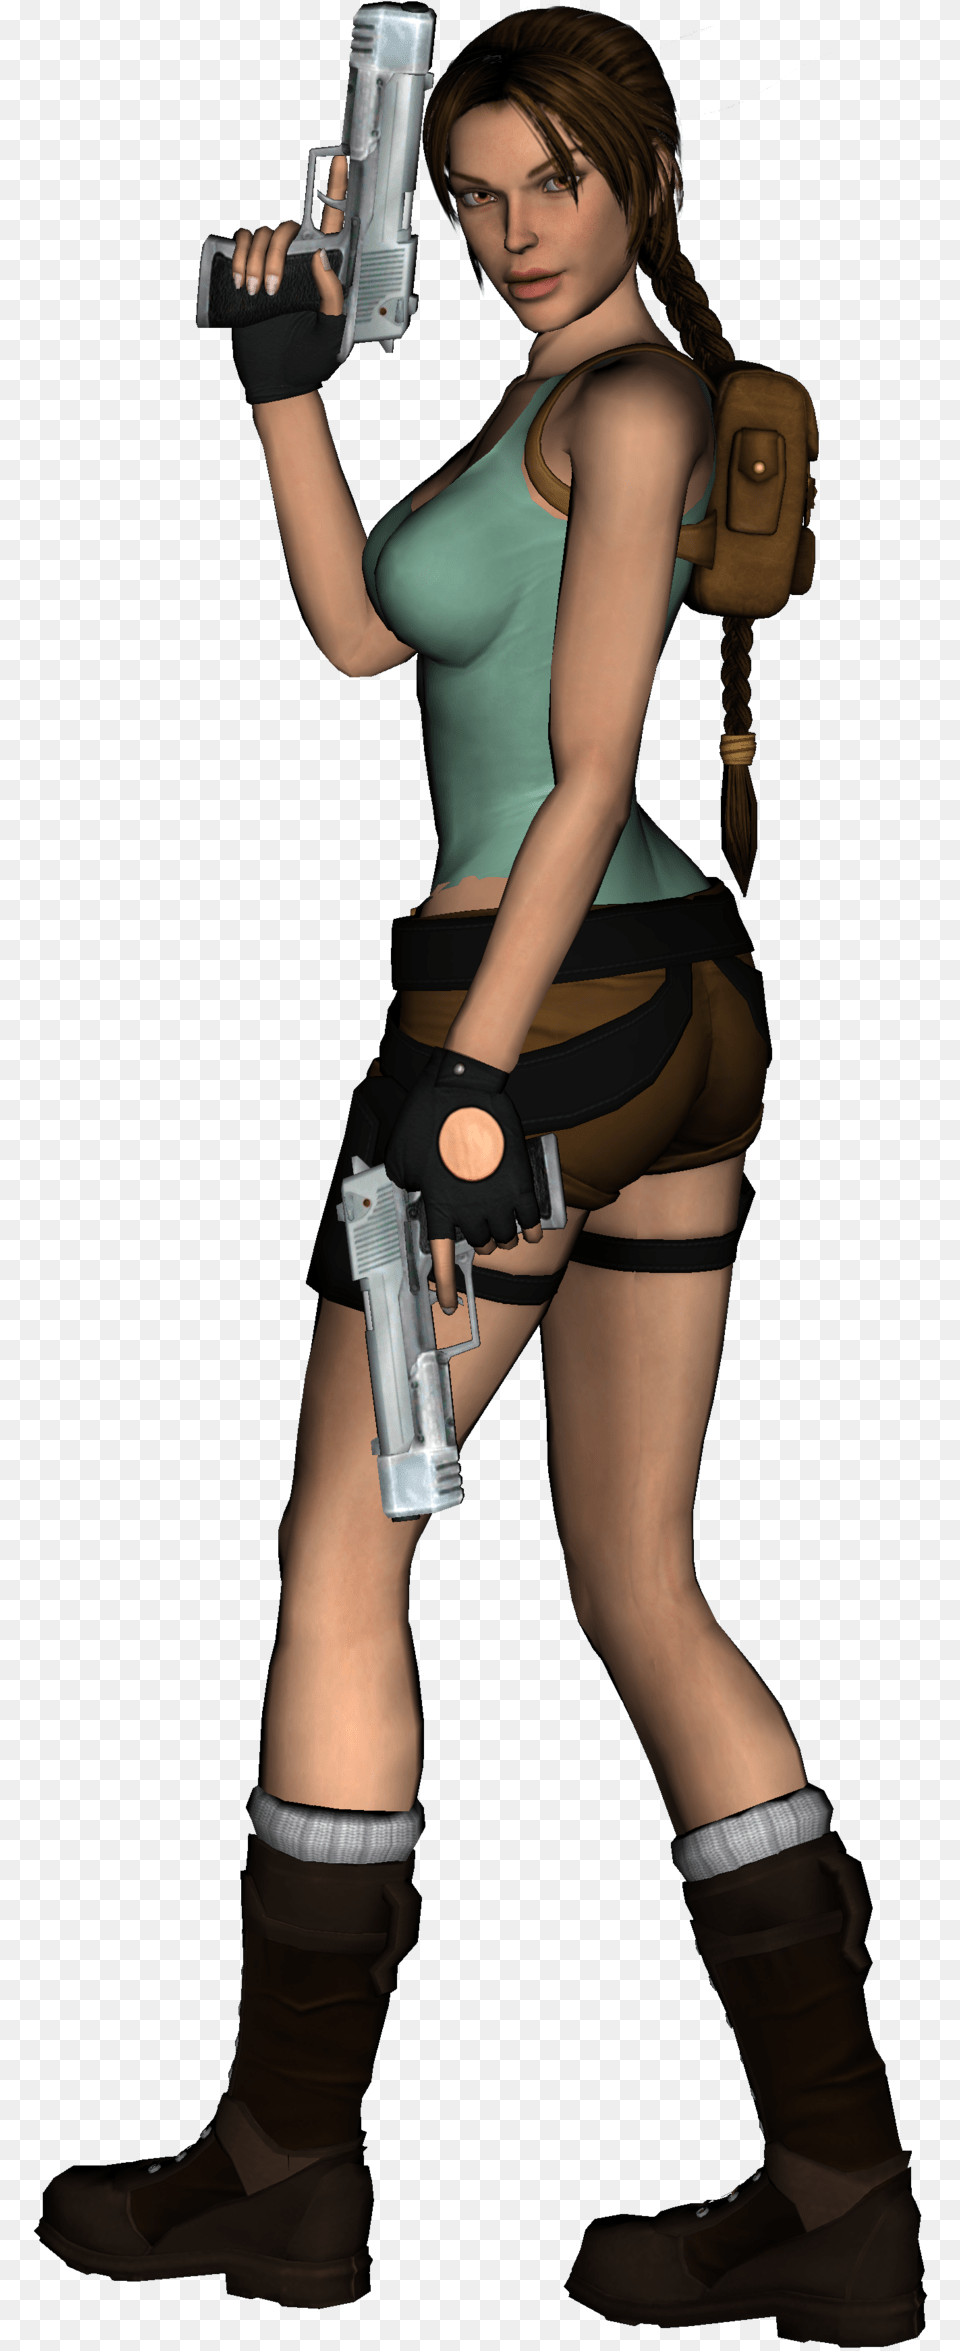 Lara Croft, Gun, Clothing, Costume, Weapon Png Image